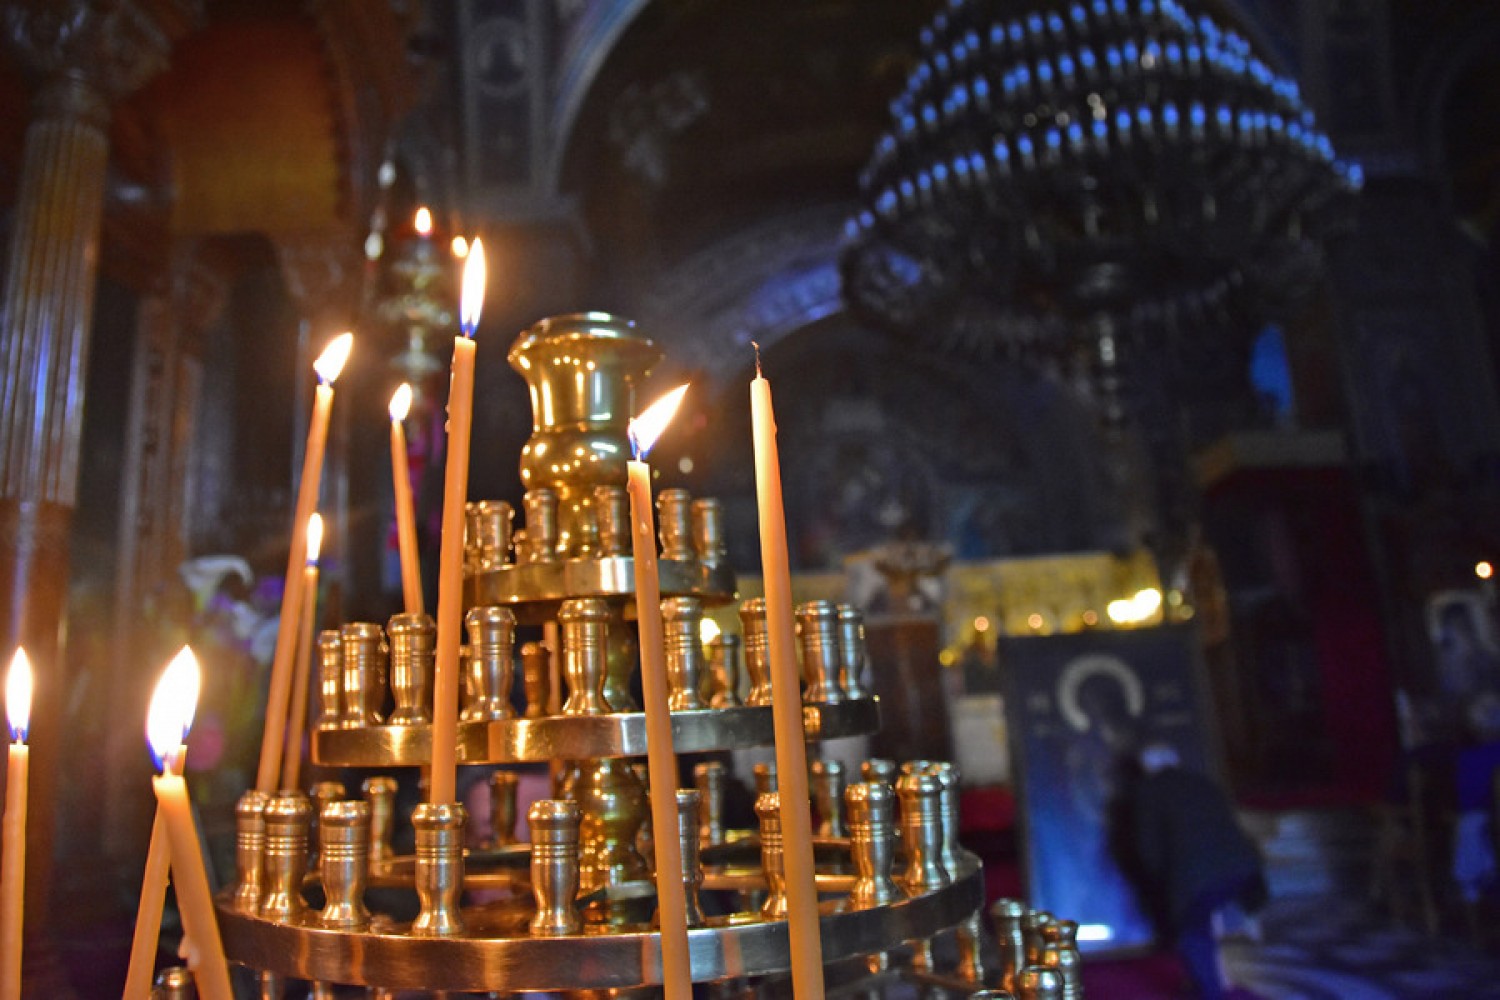 Γιατί δεν πρέπει να σβήνονται γρήγορα τα κεριά που ανάβουμε στην εκκλησία;